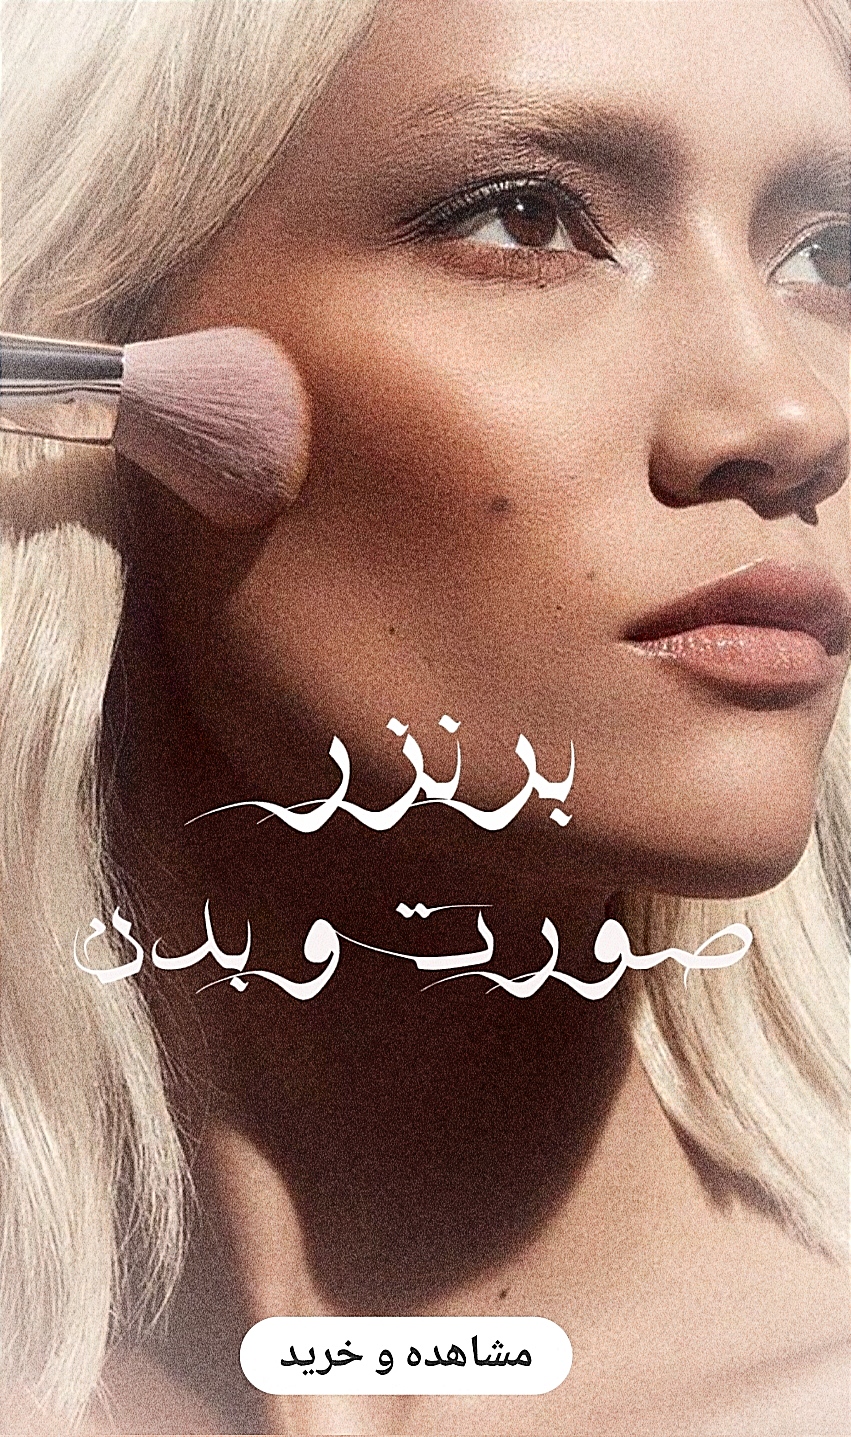 خرید آنلاین انواع برنزر های صورت و بدن اصلی و اورجینال-فروشگاه اینترنتی آرایشی و بهداشتی آزارو در شیراز-ارسال به سراسر کشور